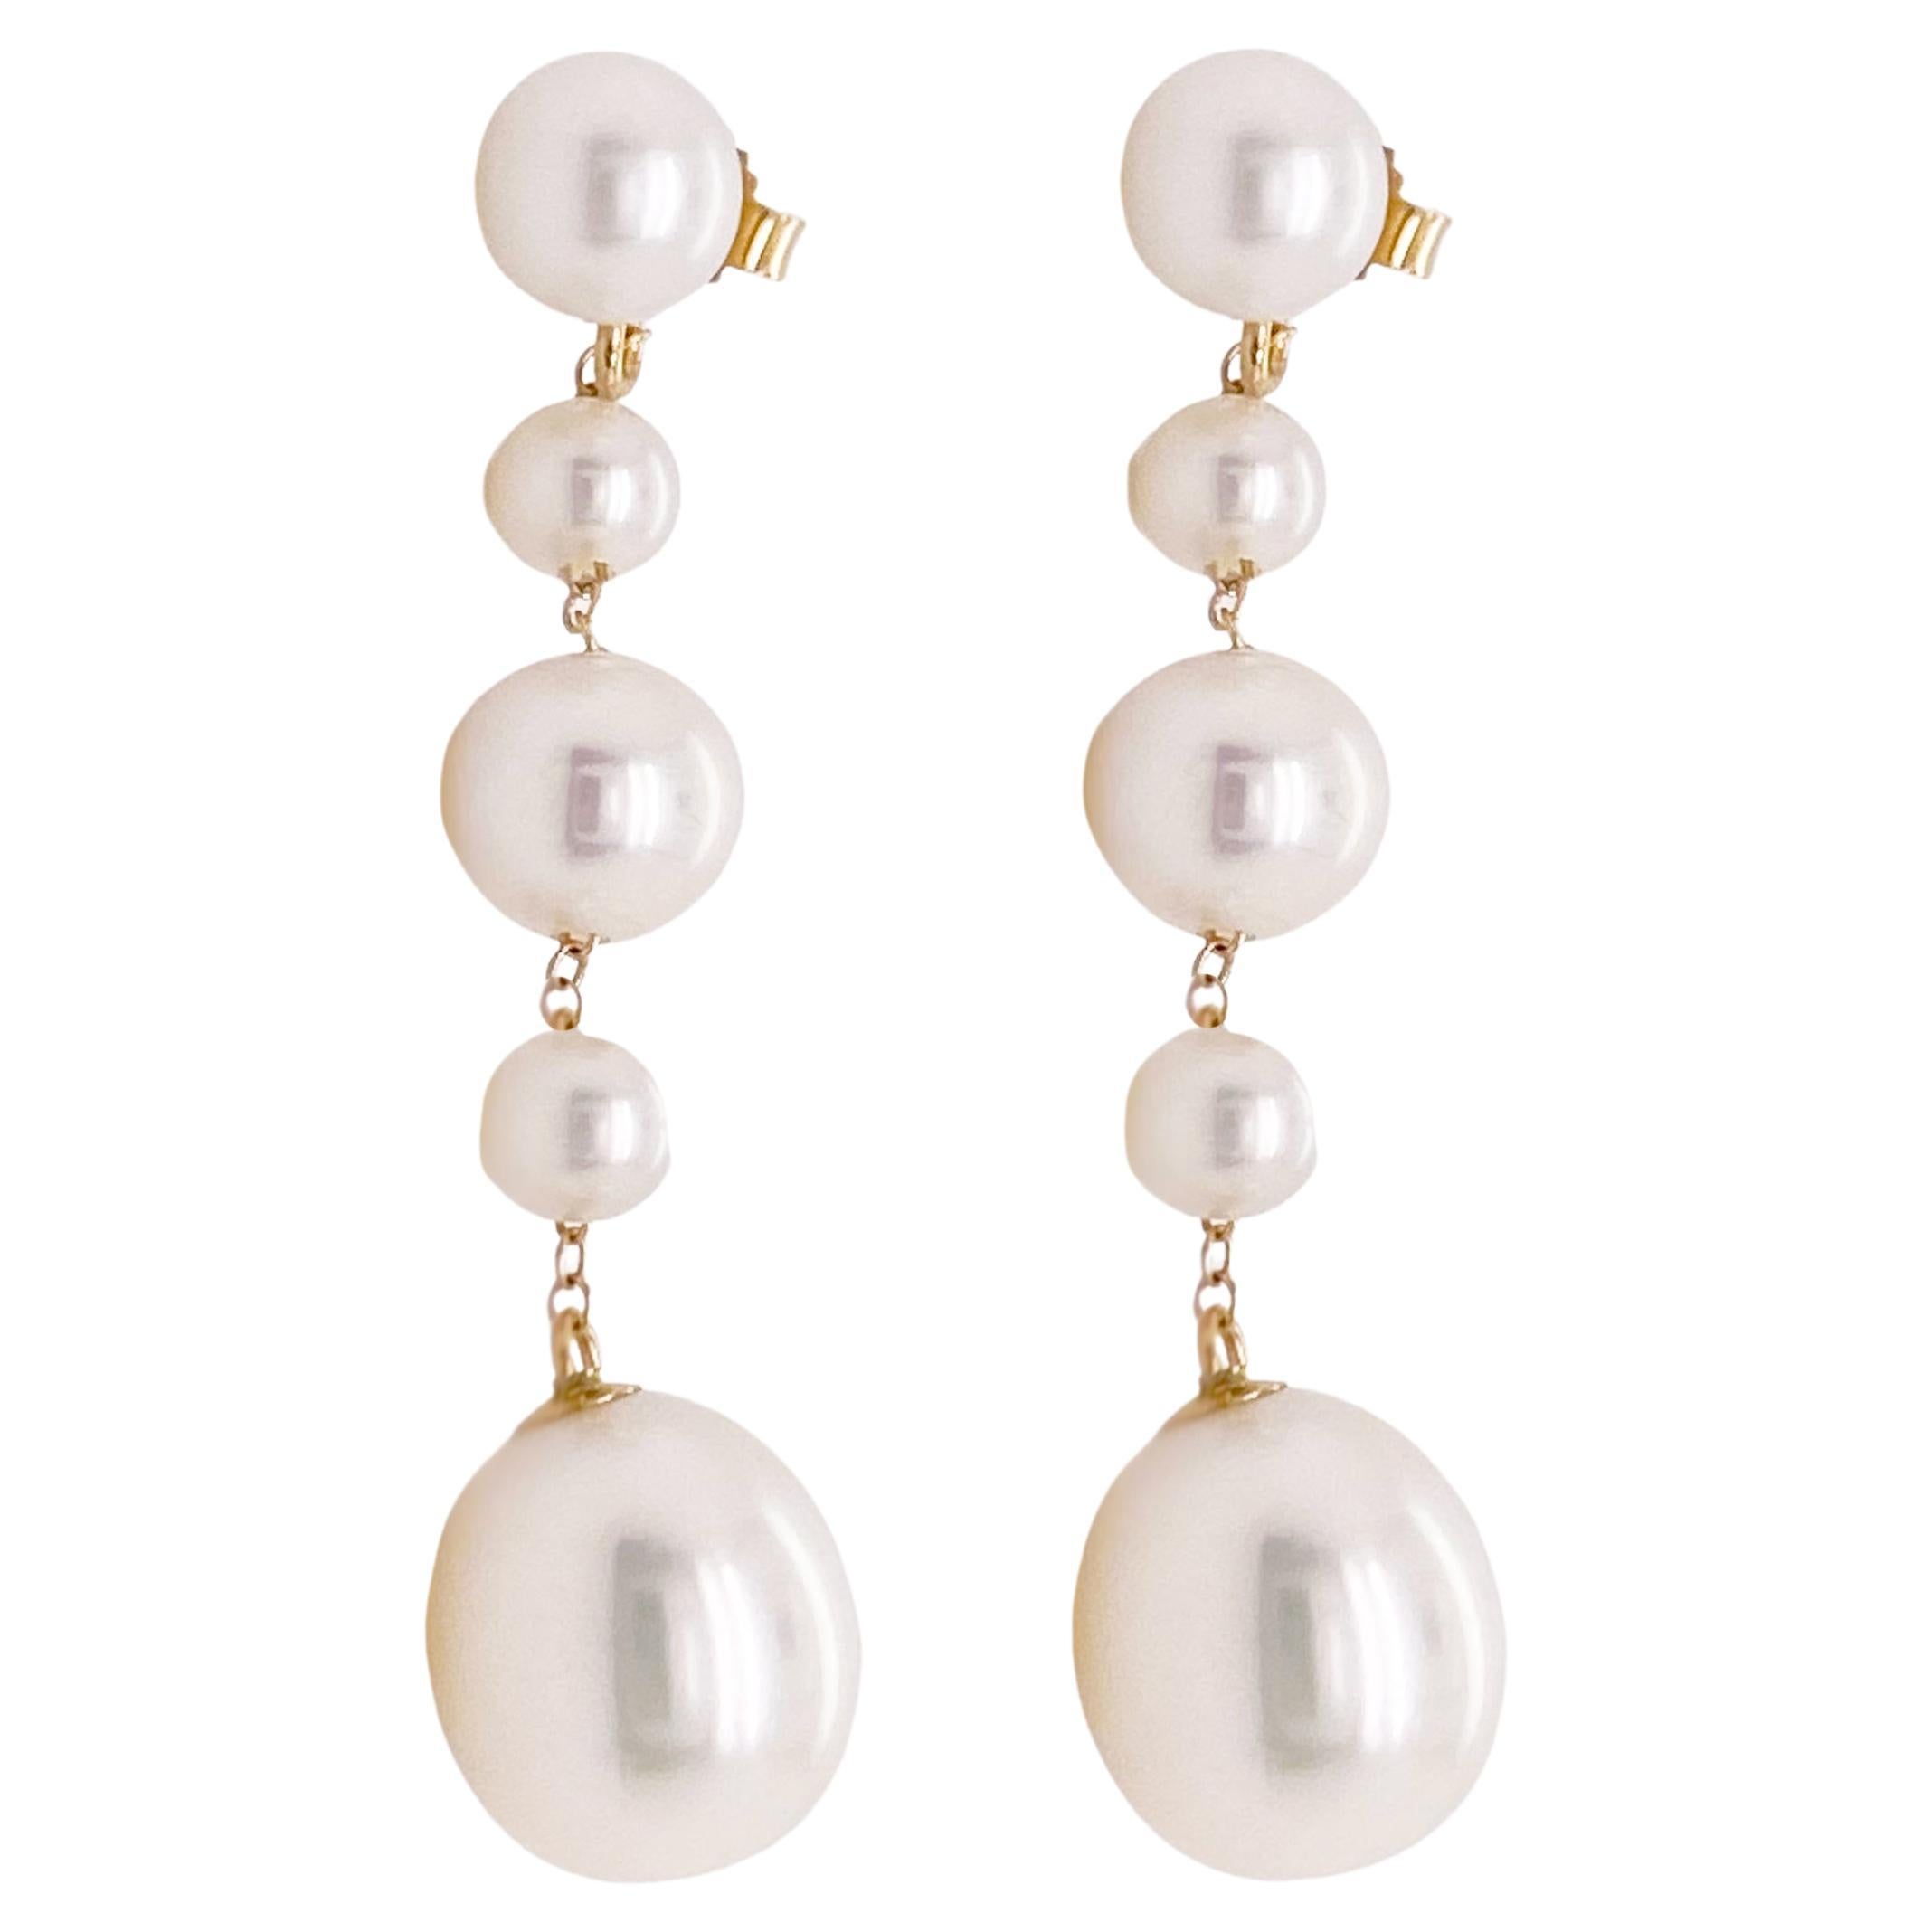 Boucles d'oreilles de mariage en perles, 5 perles et or 14 carats entre elles, boucles d'oreilles fantaisie